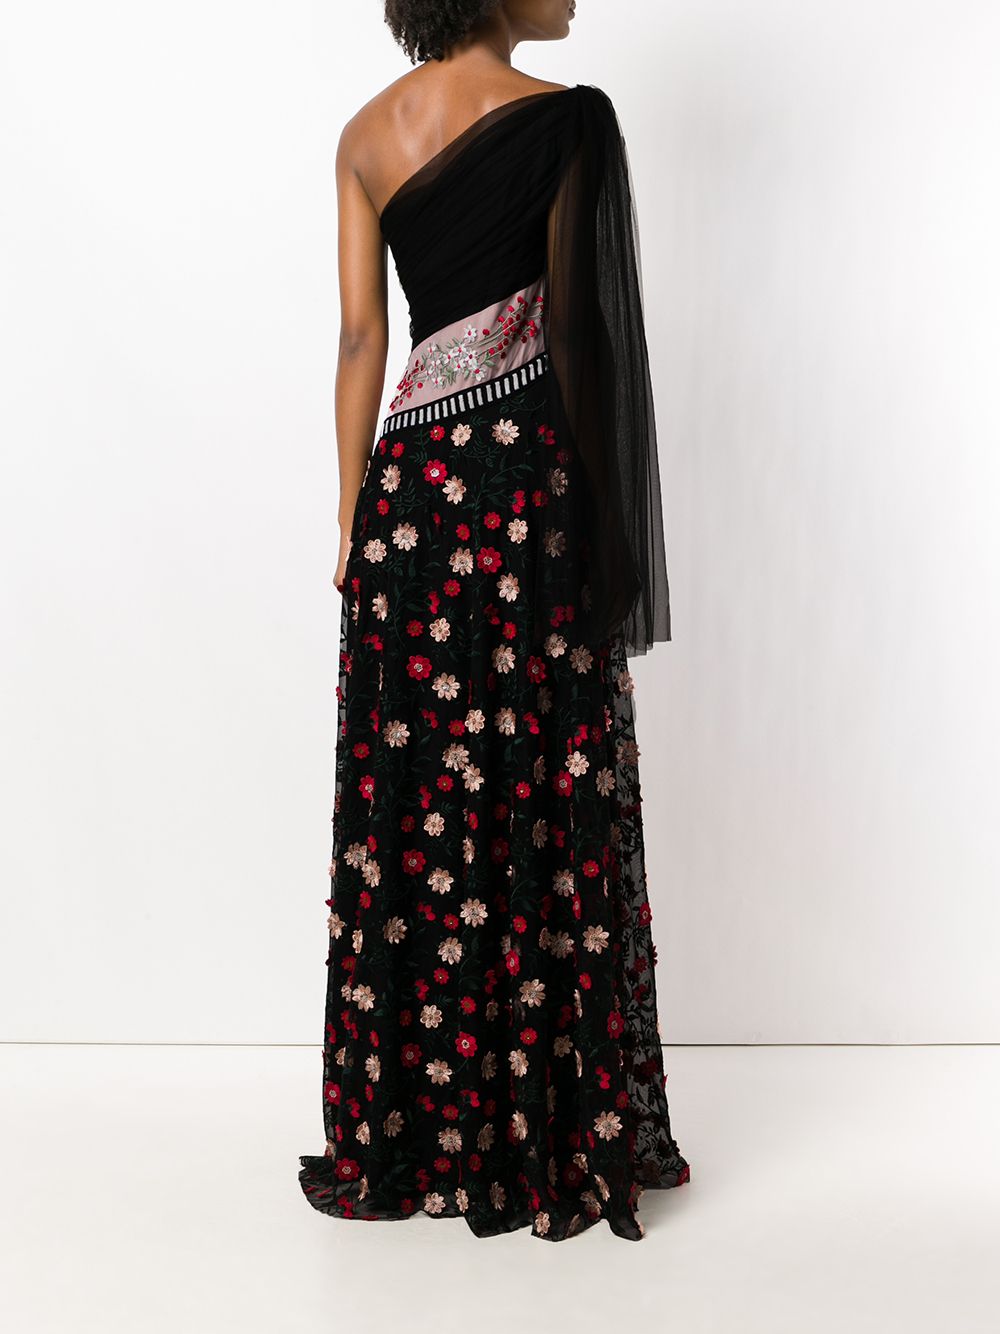 фото Talbot runhof платье на одно плечо с цветочной вышивкой